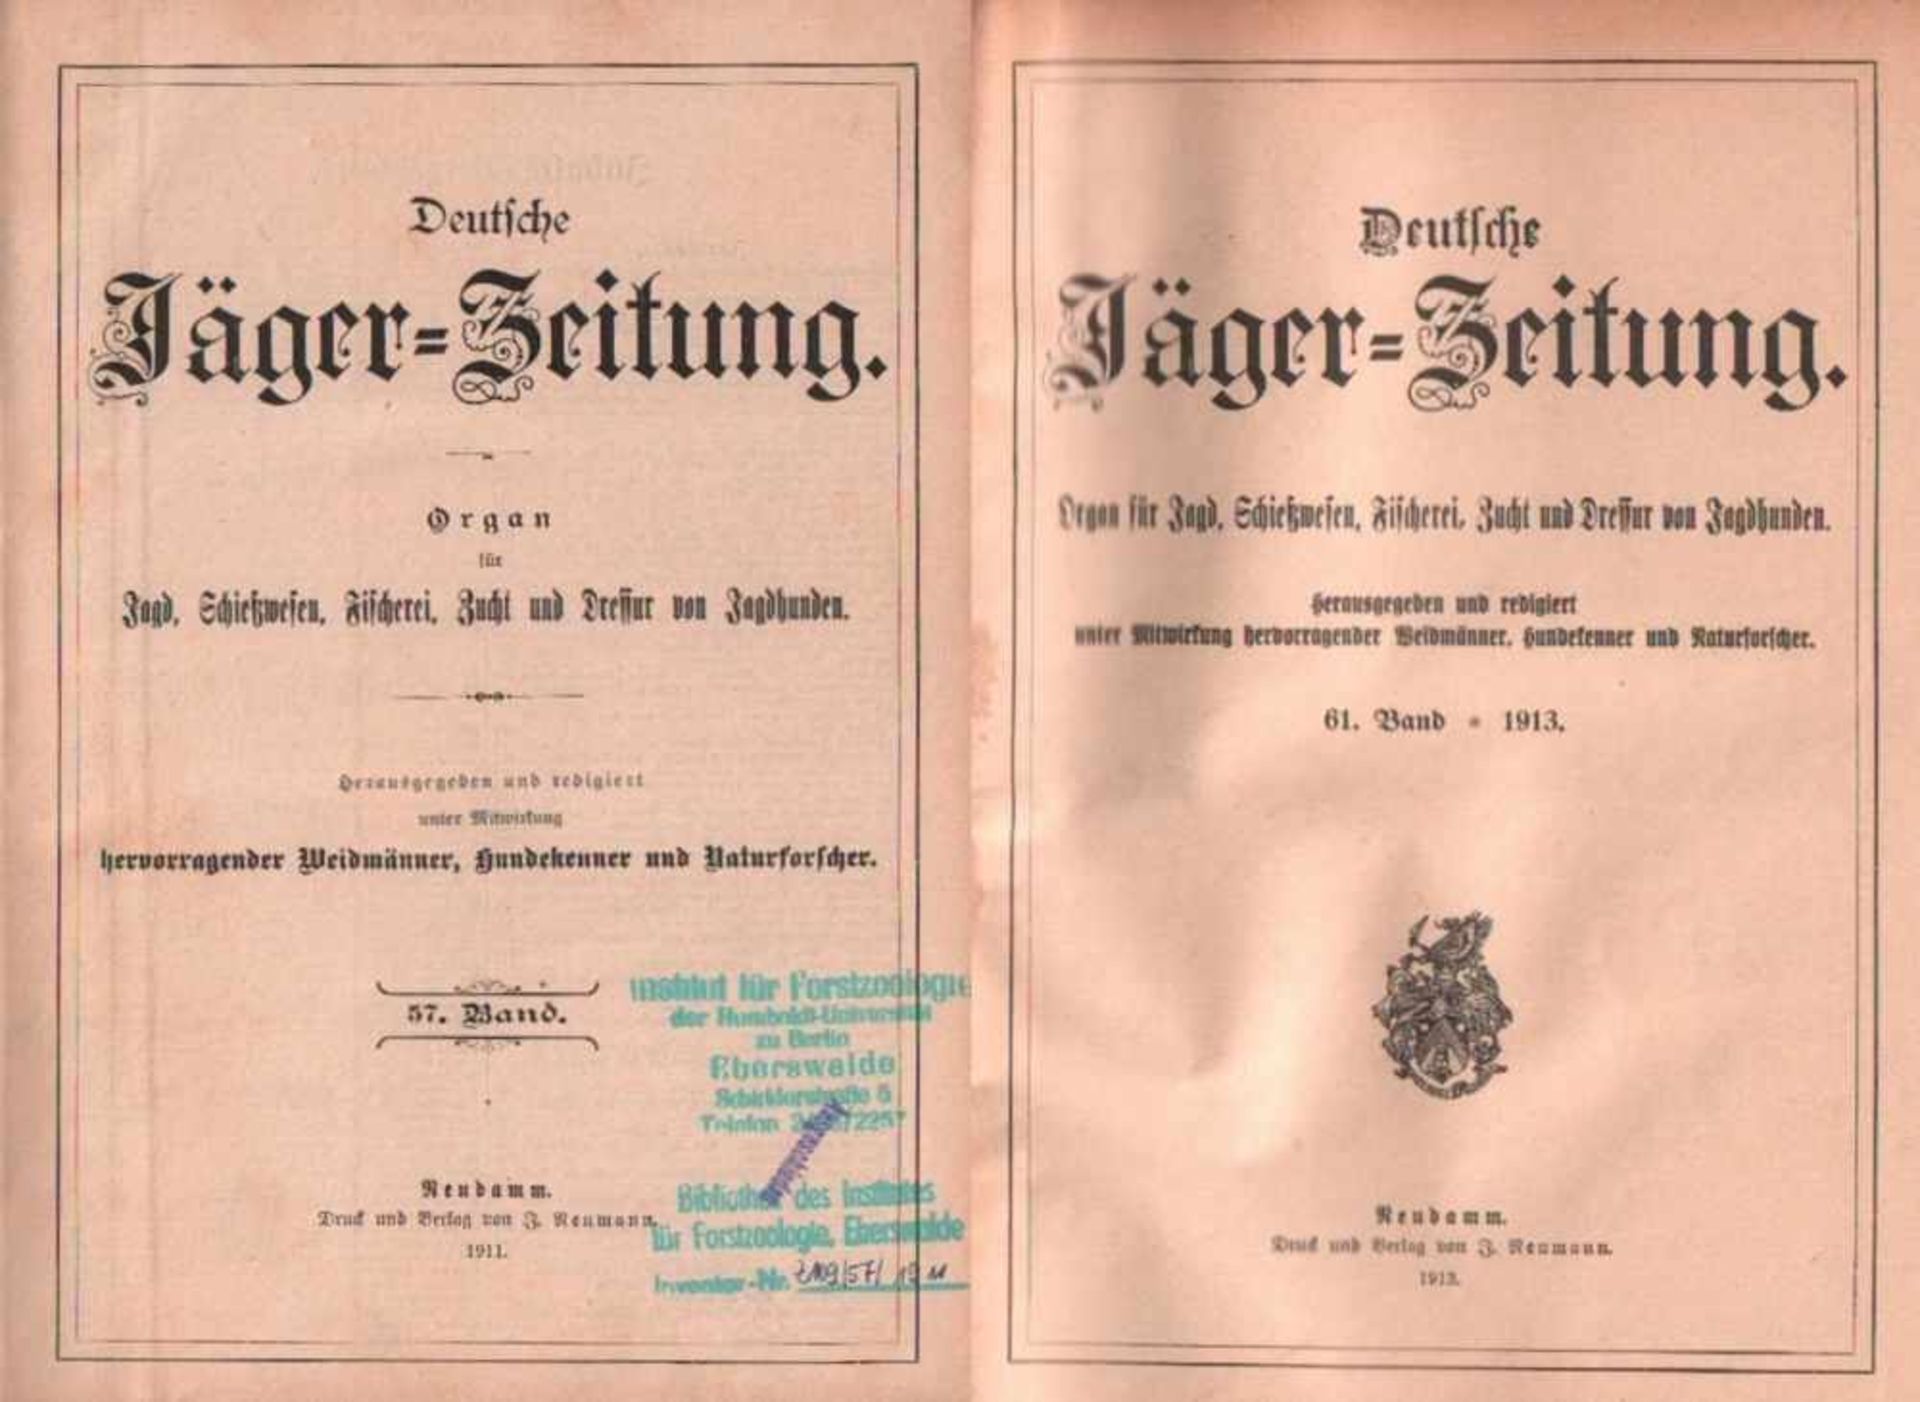 Deutsche Jäger - Zeitung.Organ für Jagd, Fischerei, Zucht und Dressur edler Hunde. Hrsg. und